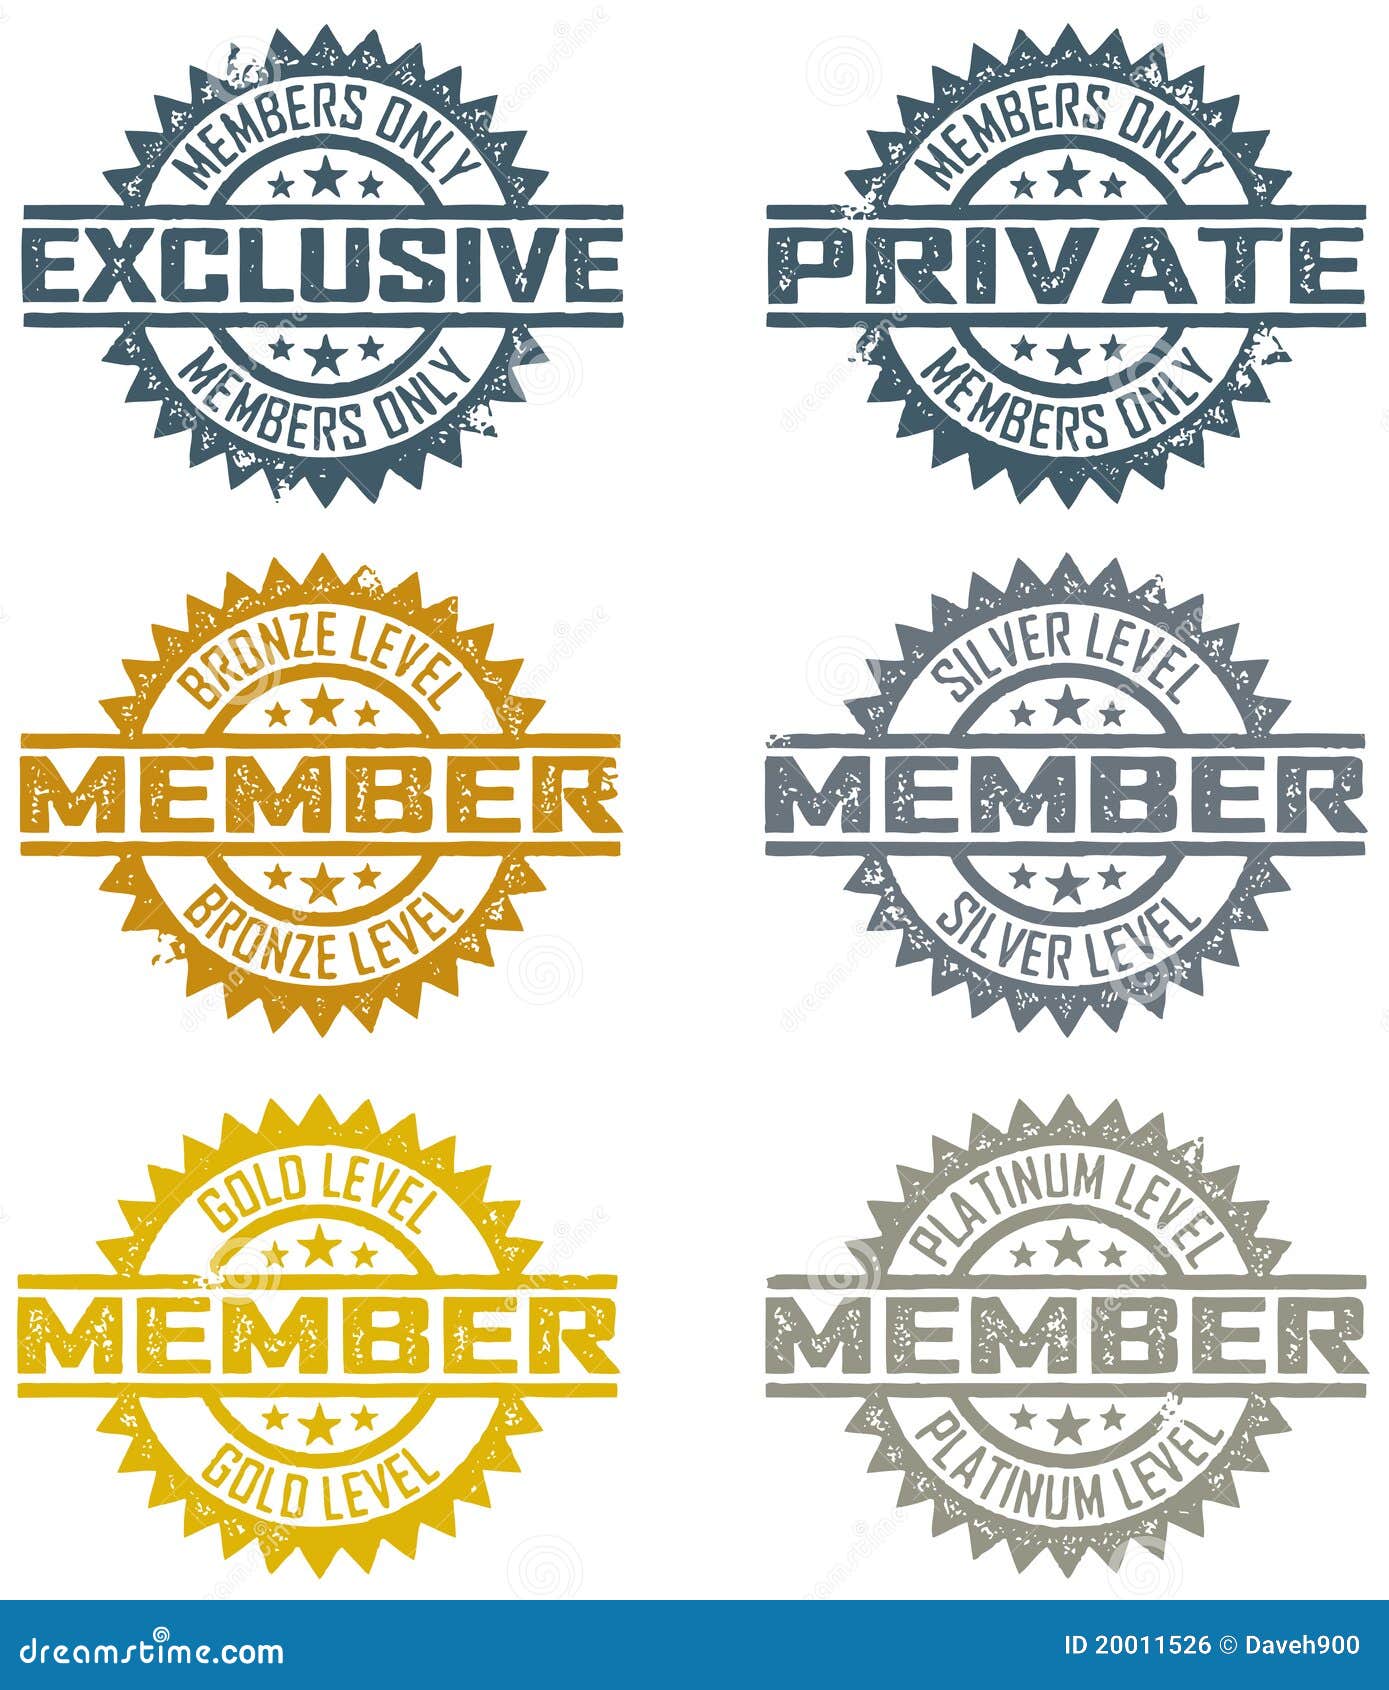 membership stamps